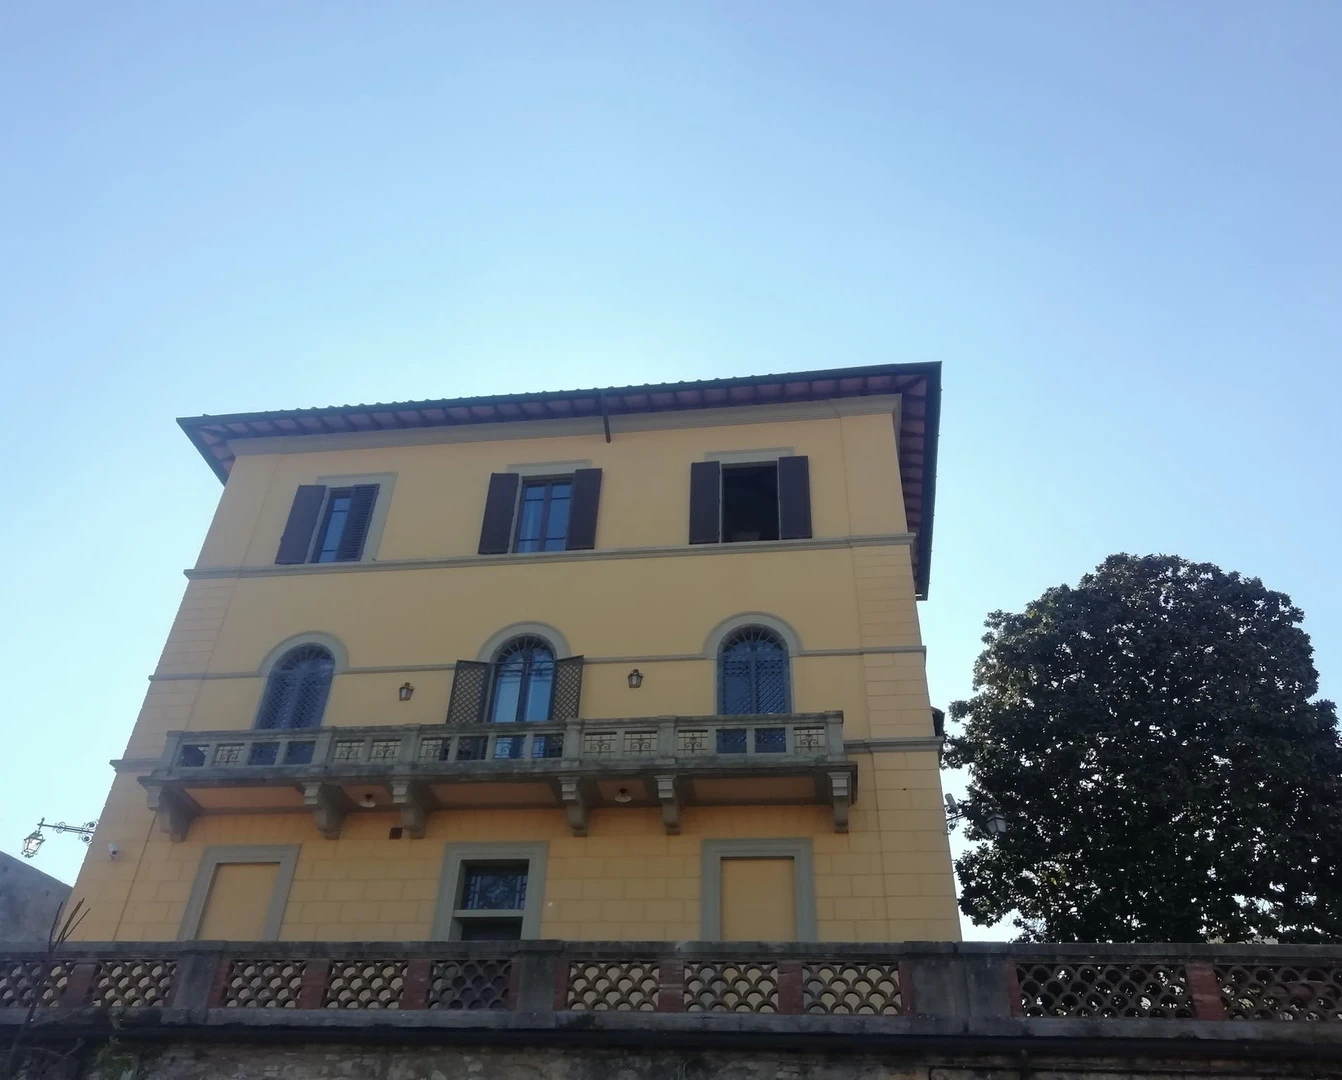 Monatliche Vermietung von Zimmern in Siena